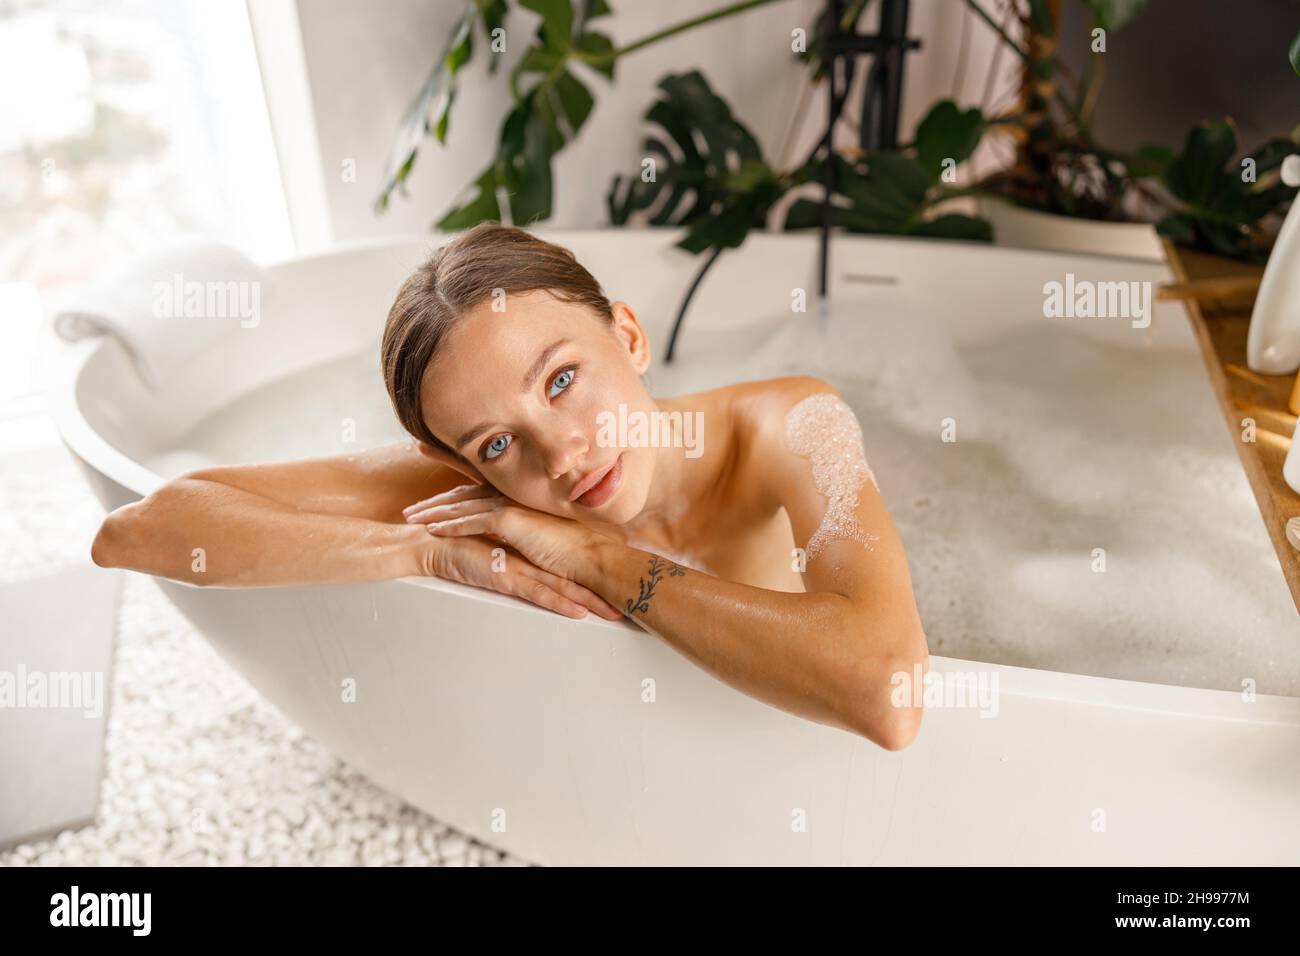 Bella giovane donna che si sente stanca, appoggiata sul lato della vasca da bagno, mentre si fa il bagno rilassante al centro benessere Foto Stock